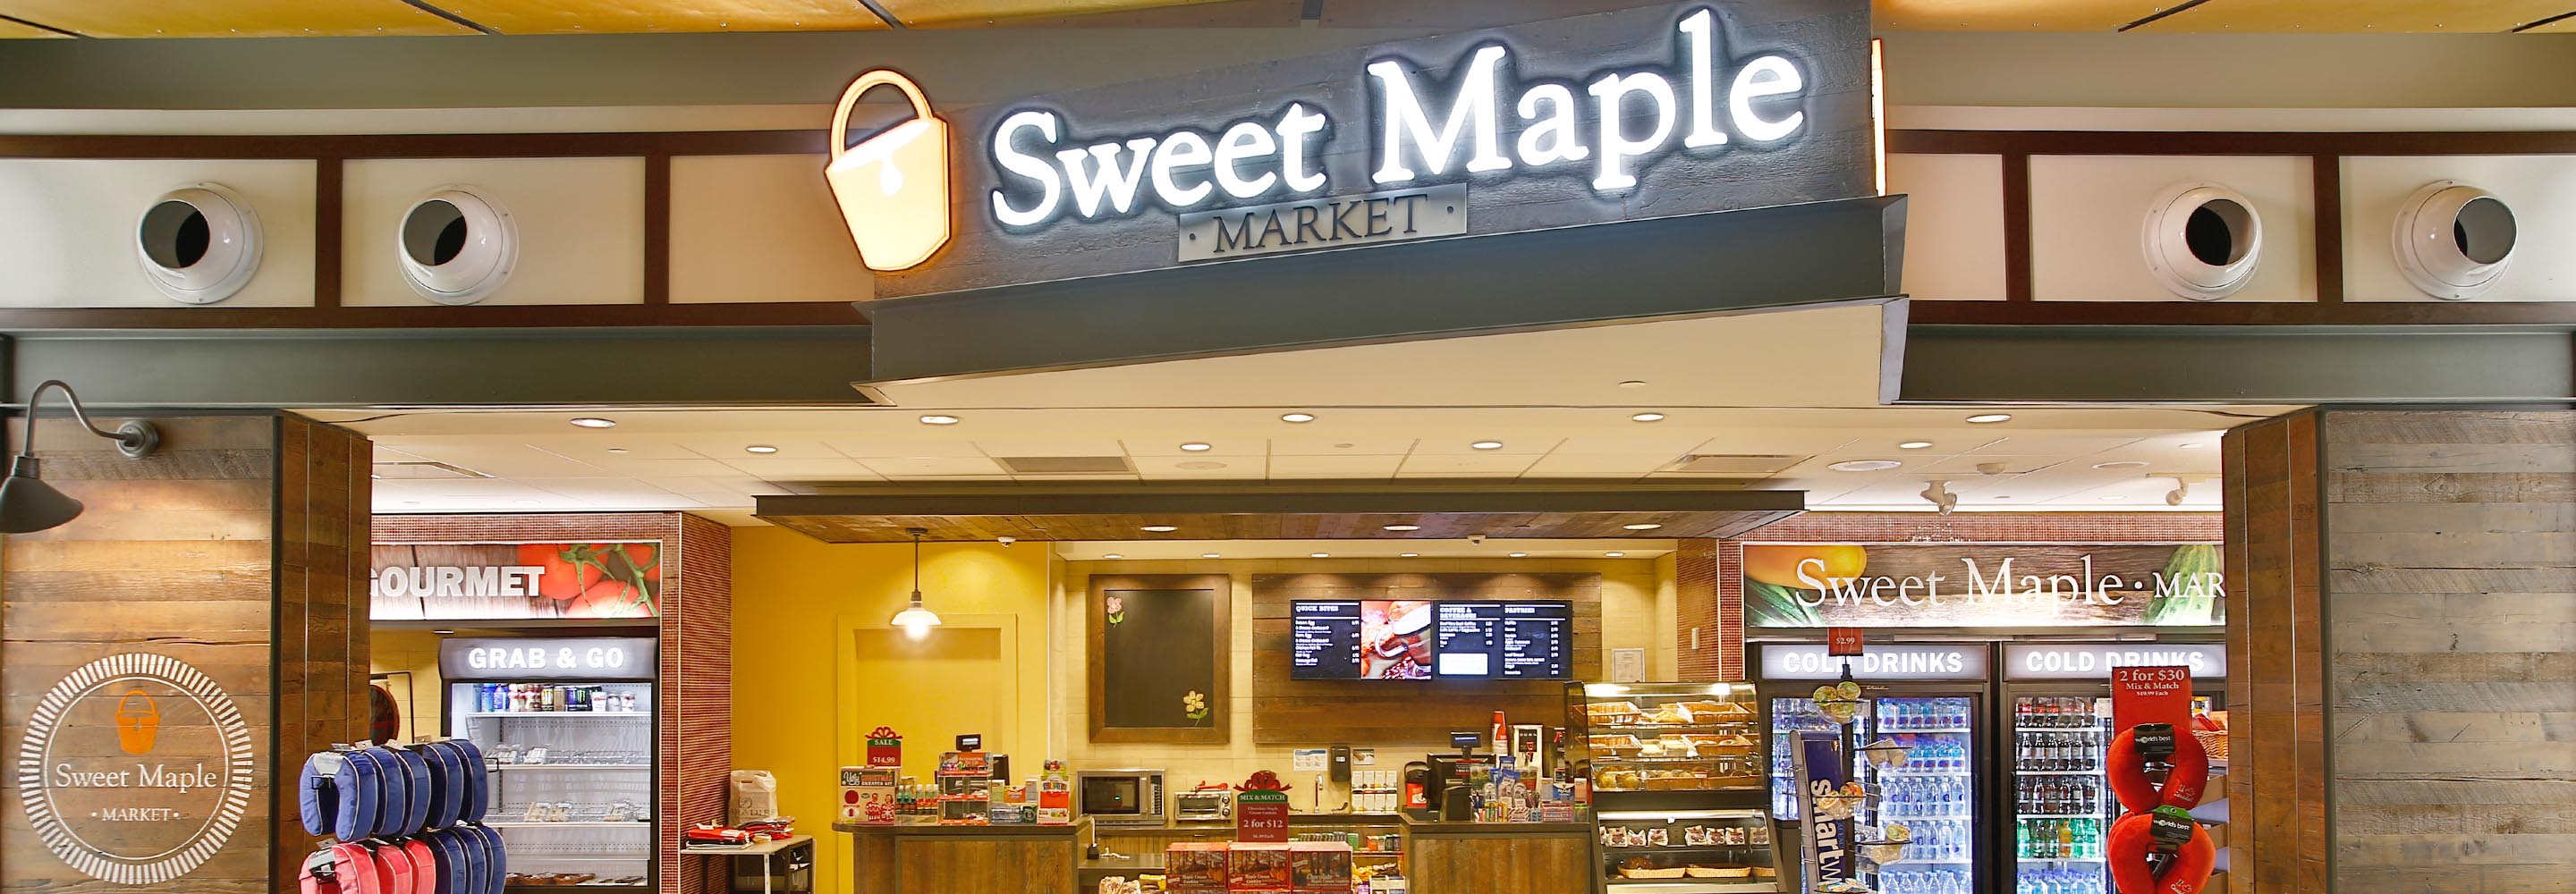 sweet maple menu